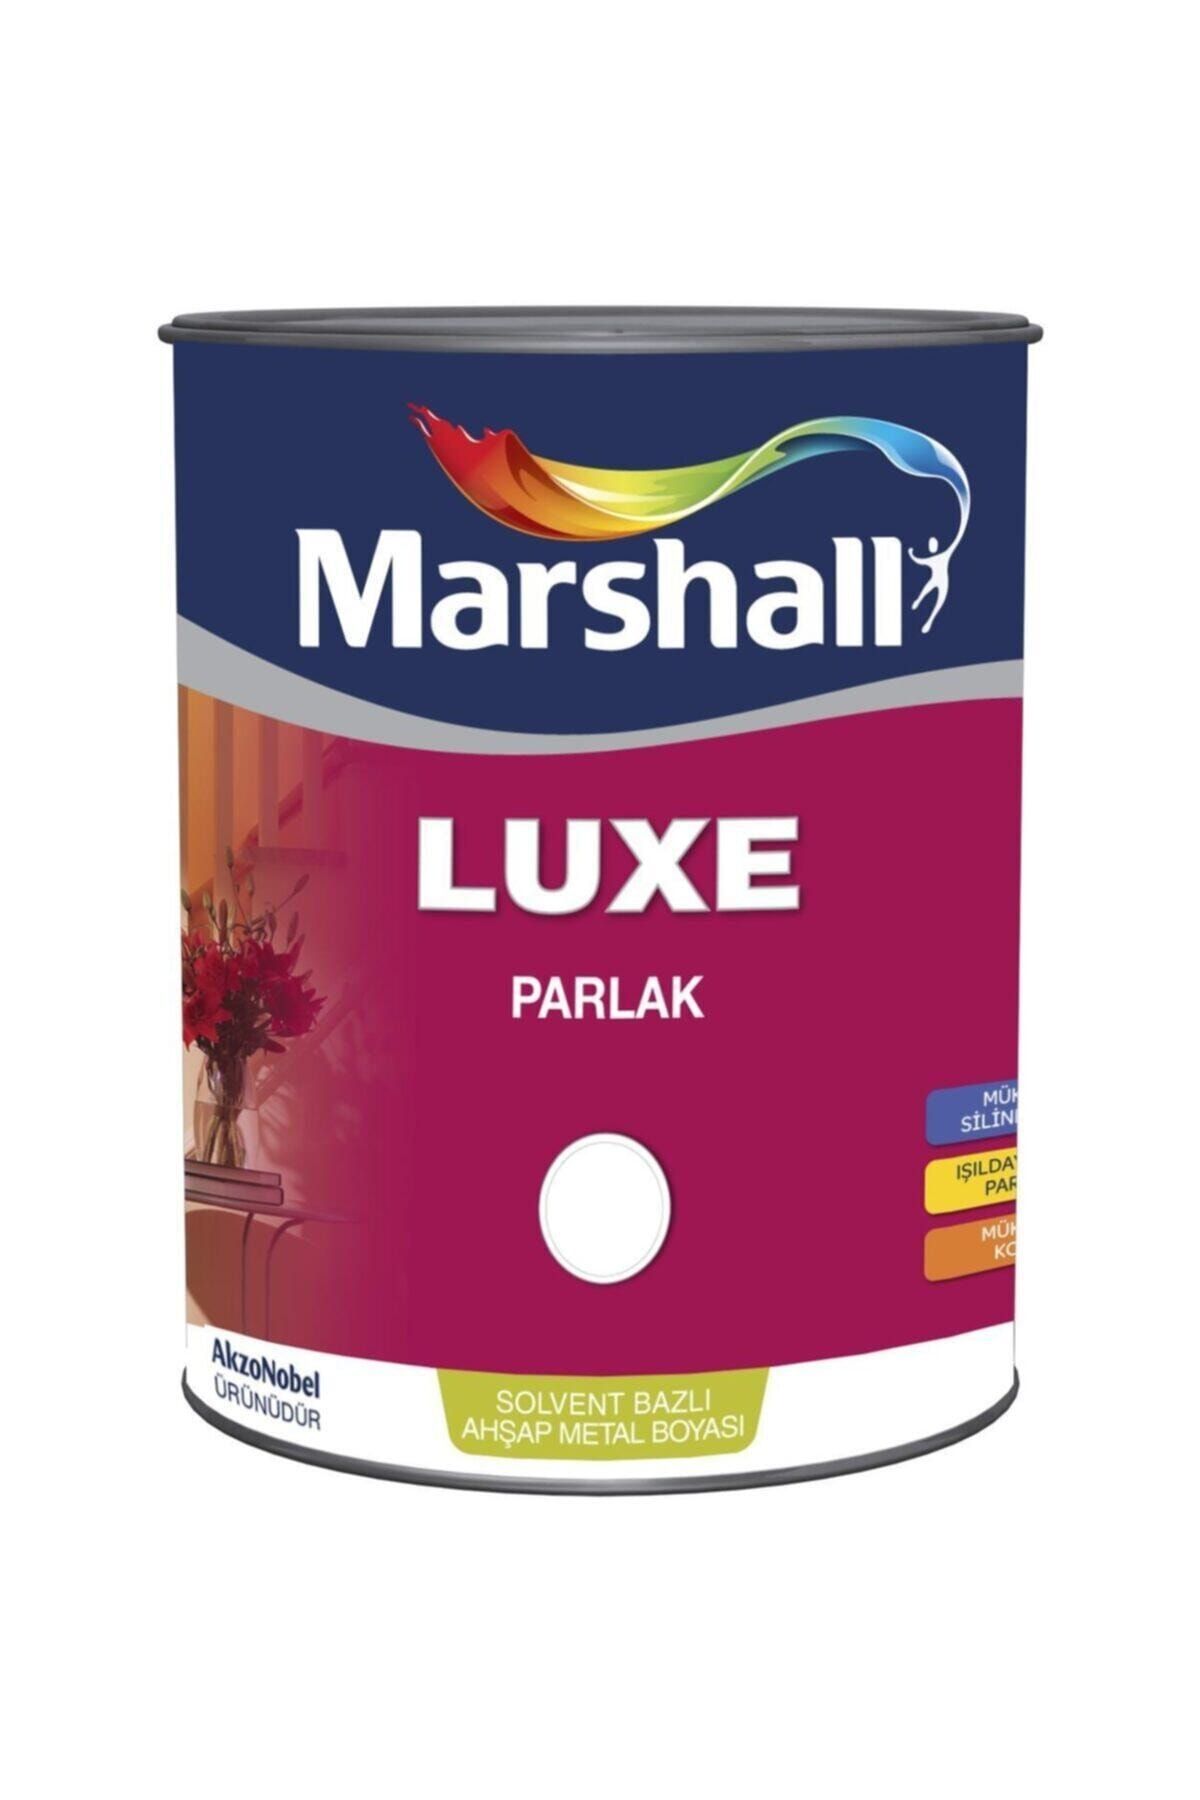 Marshall Luxe Parlak Solvent Bazlı Yağlı Boya 2.5 Lt